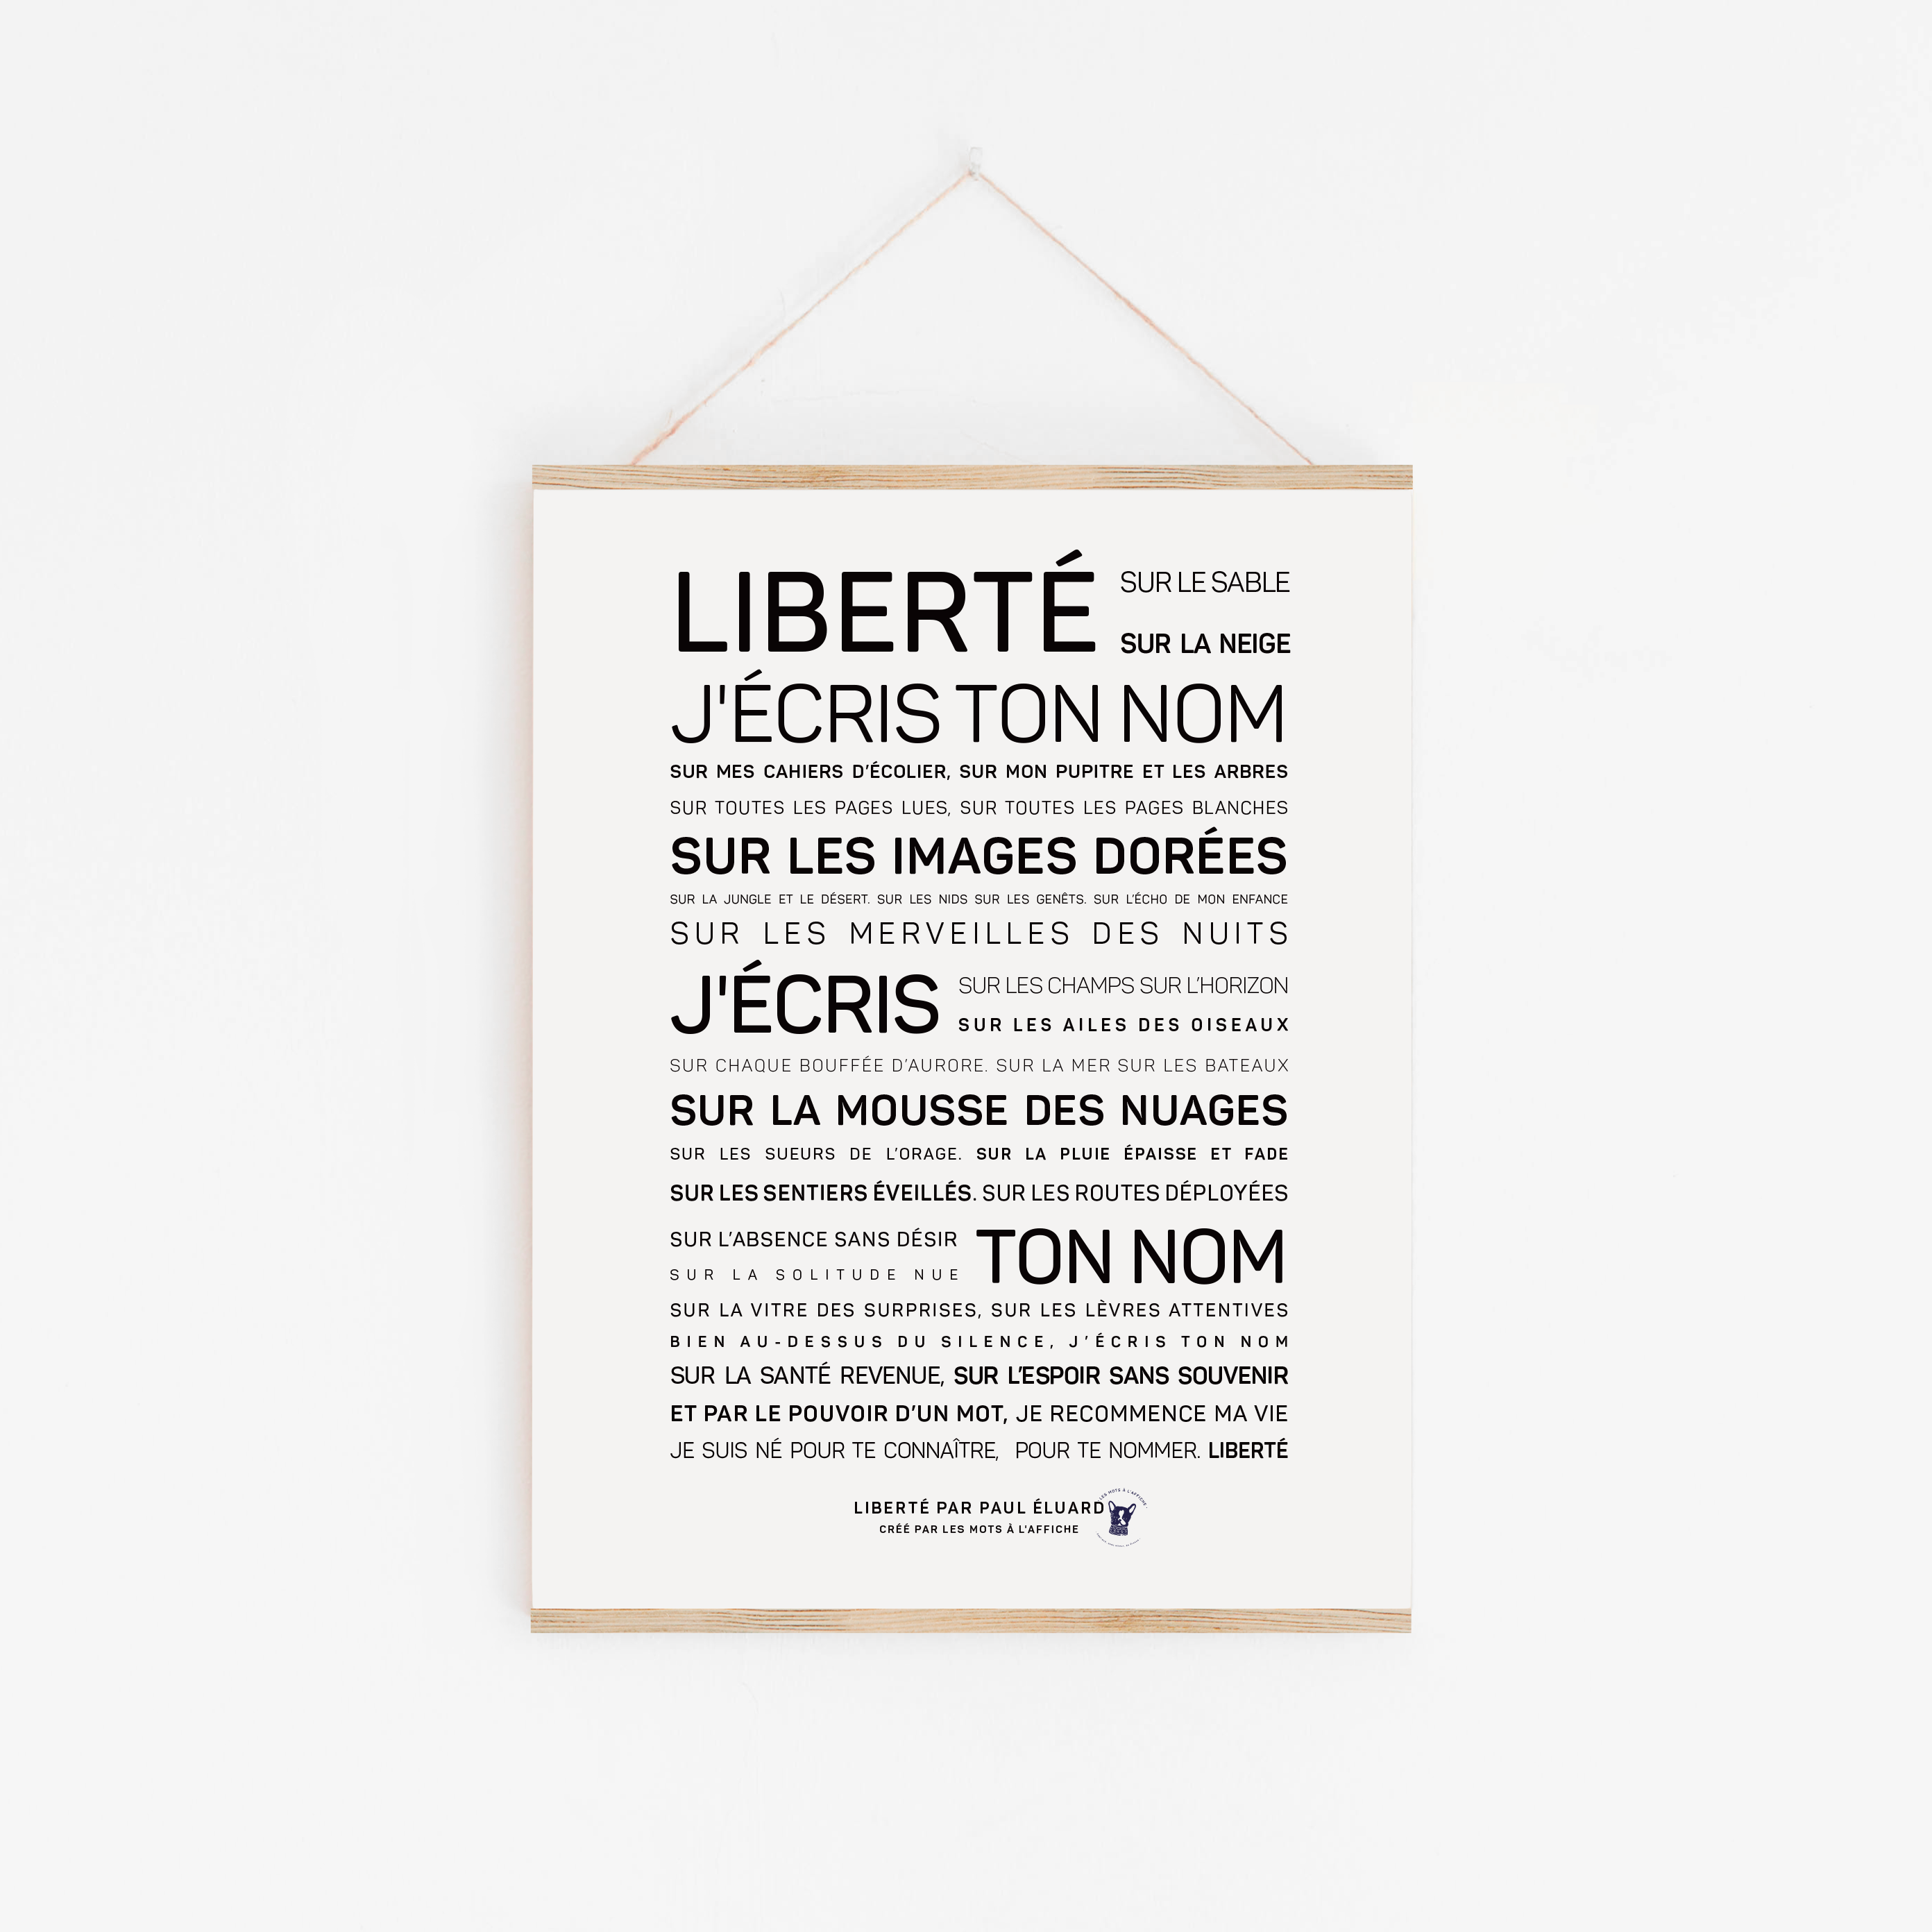 Galerie : Carte postale électronique Liberté